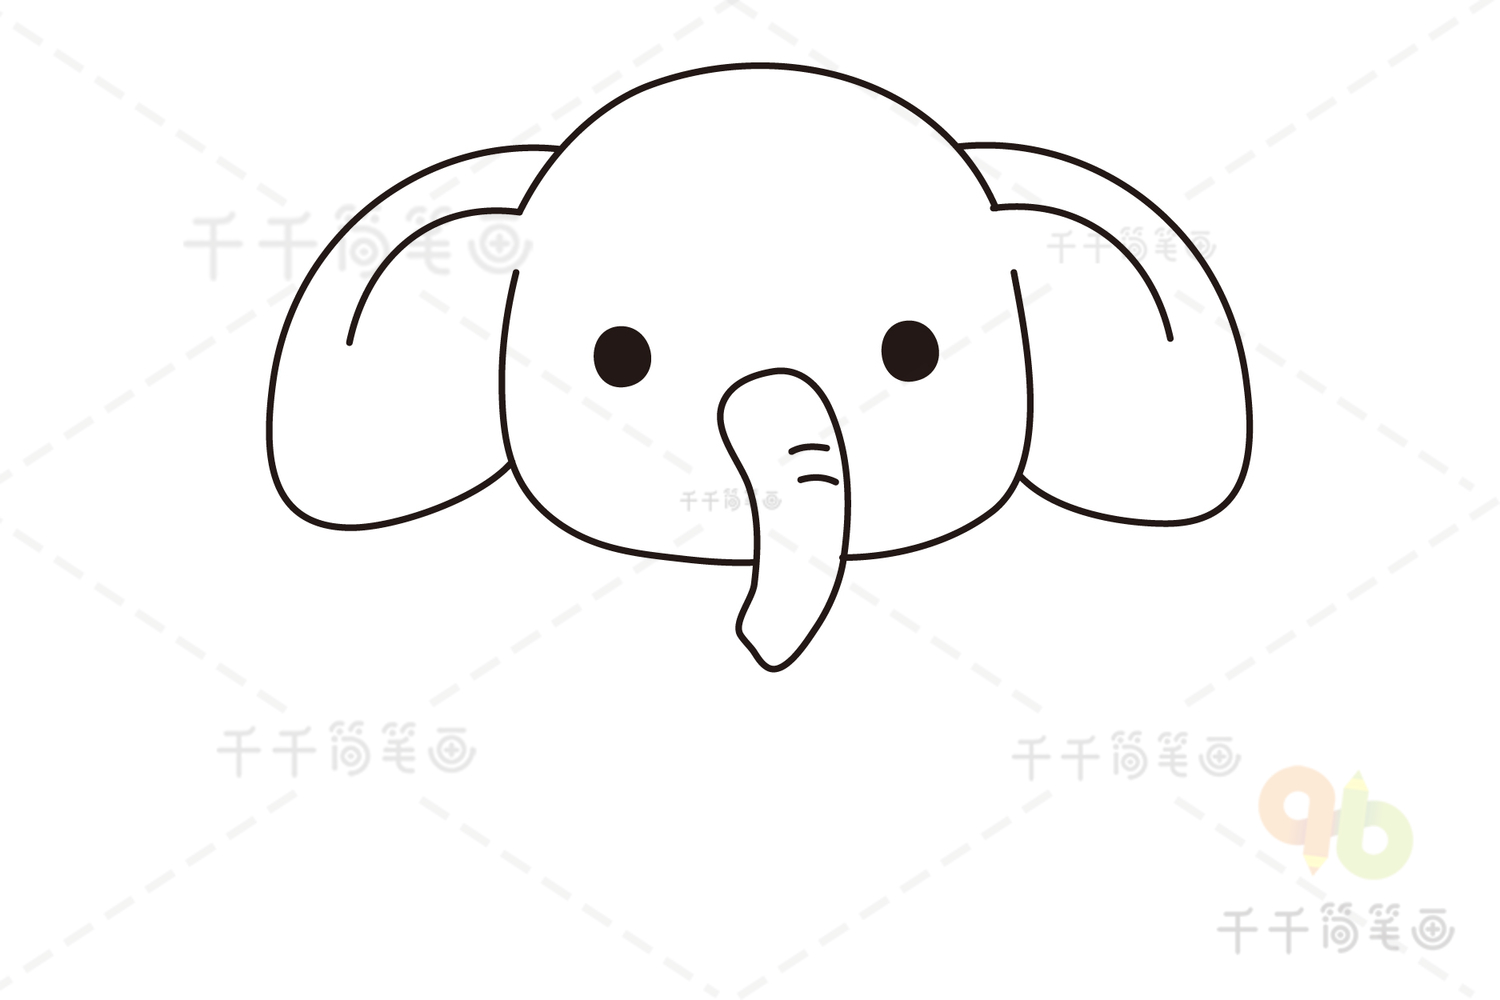 漂亮美术 可爱简笔画大象头怎么画过程图💛巧艺网